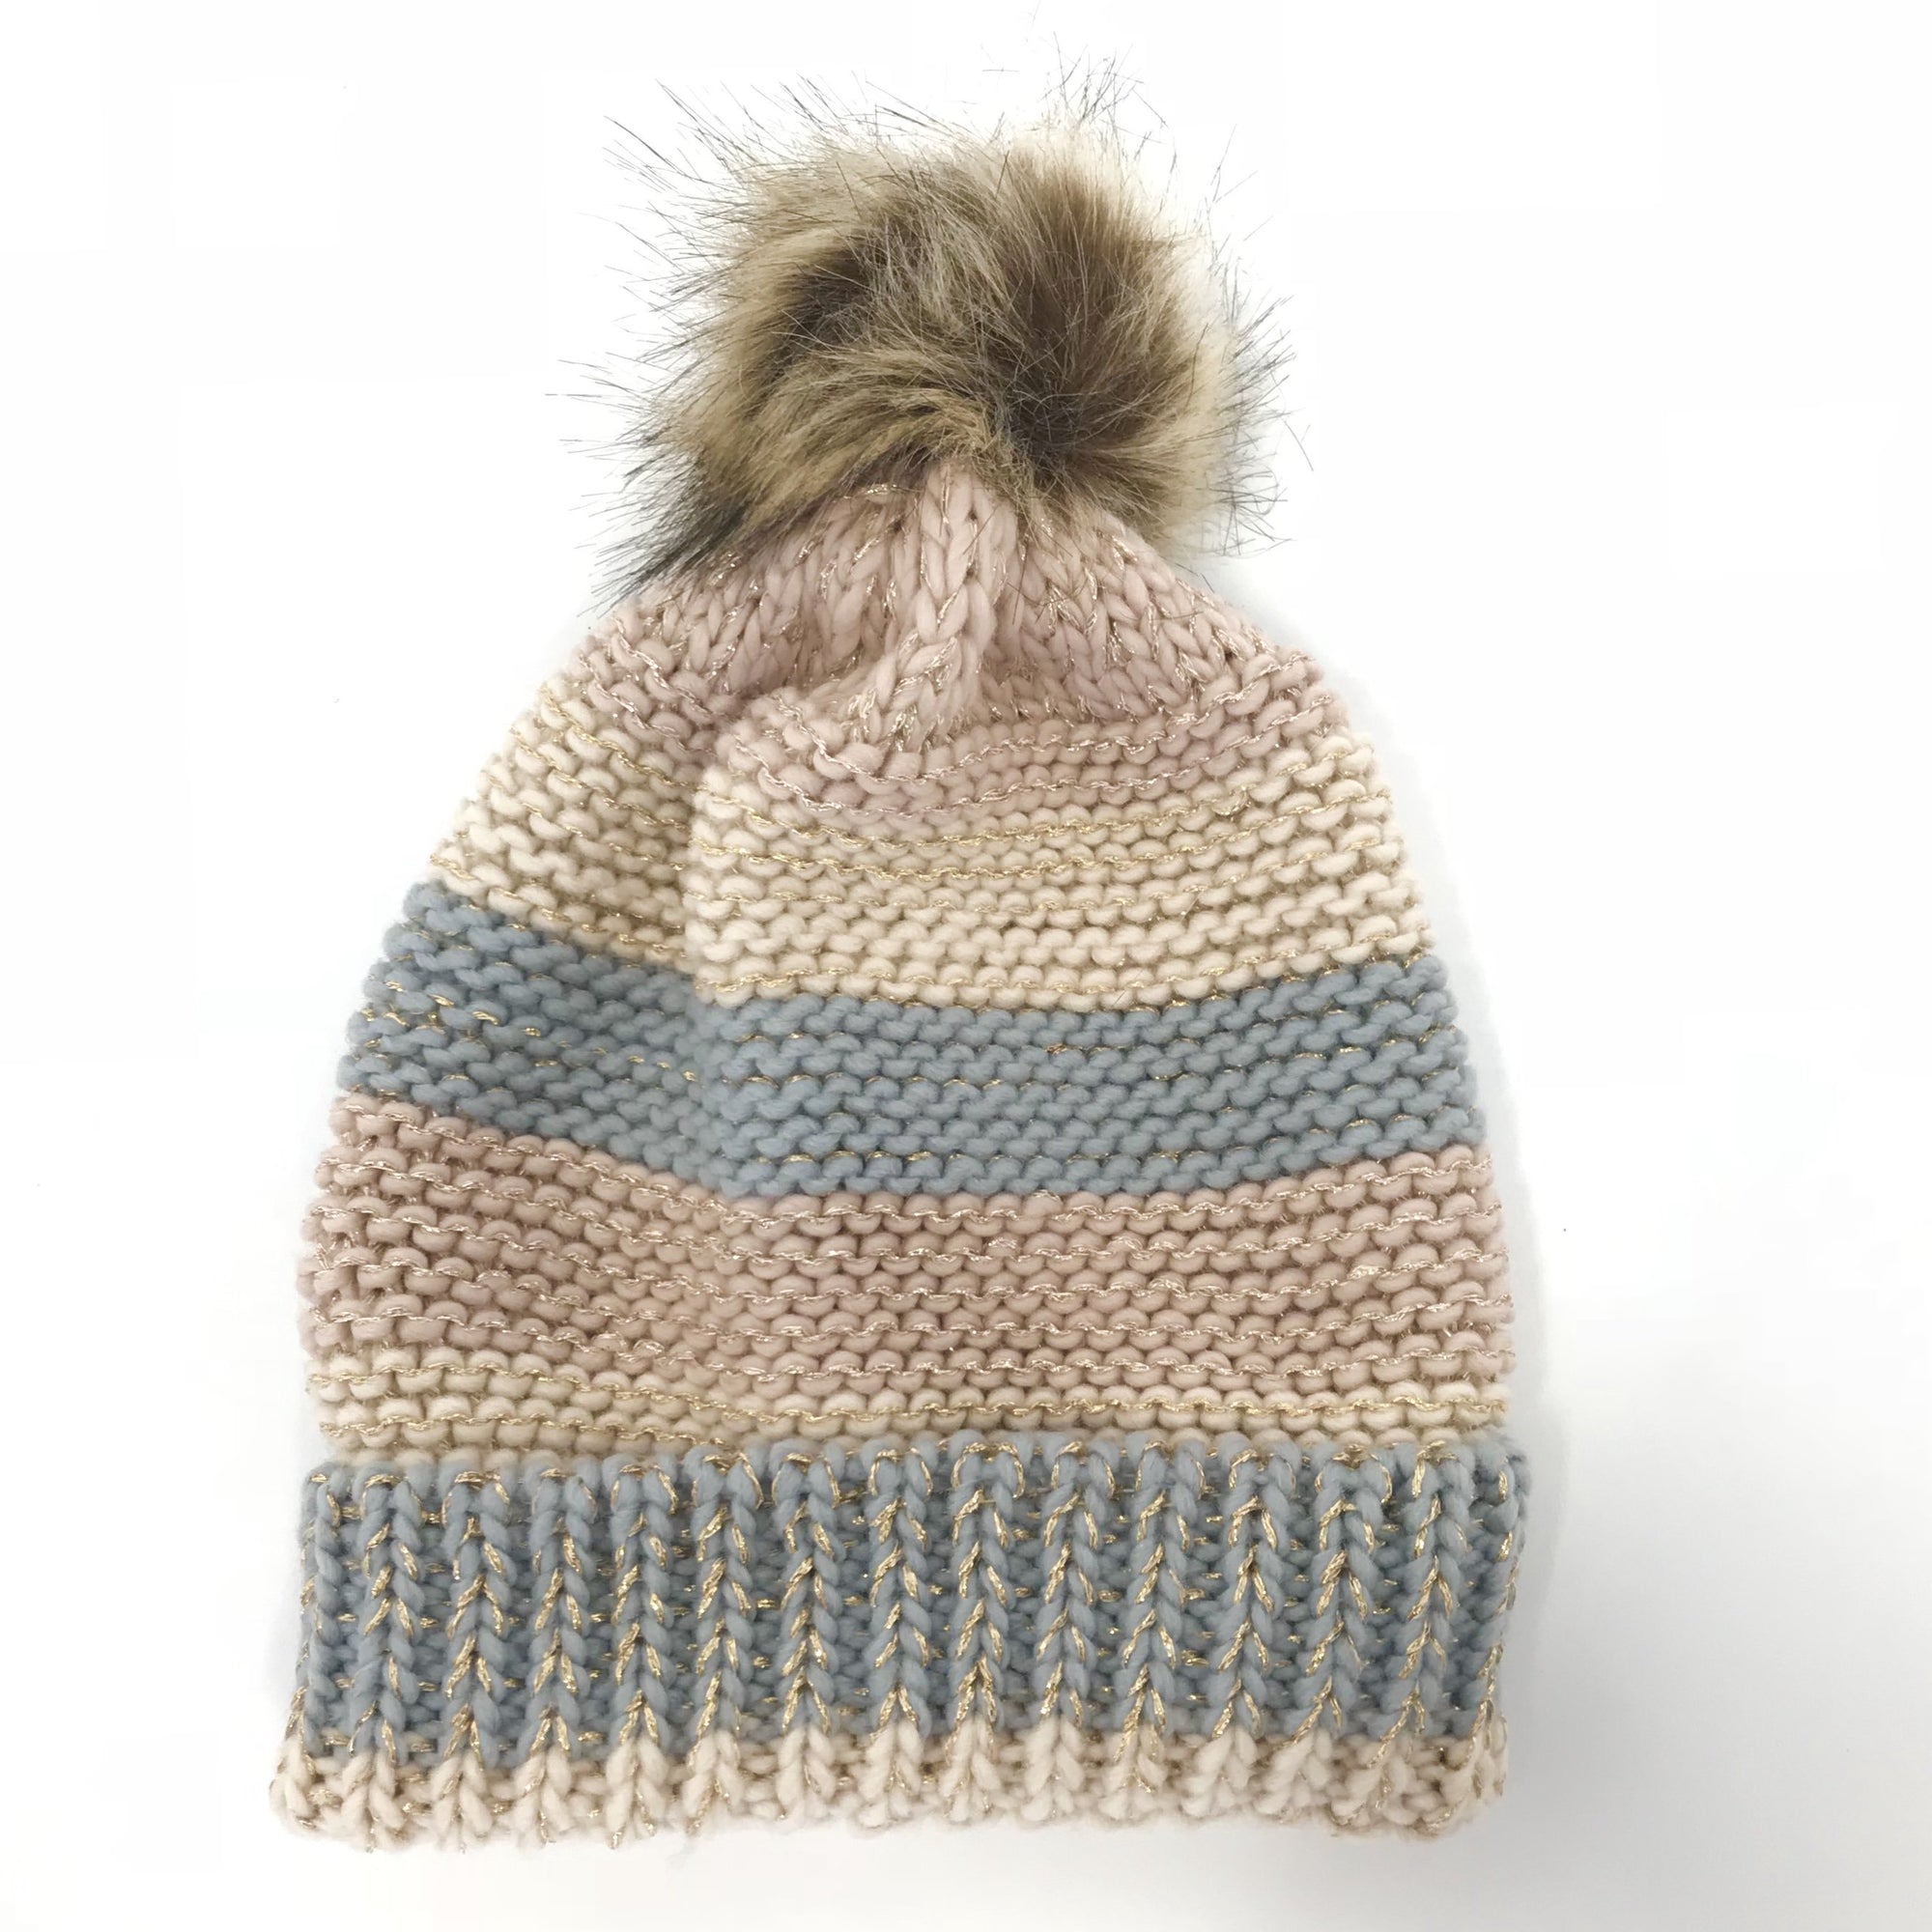 Pastel Striped Knit Beanie Hat with Fur Pom - Dainty Hooligan